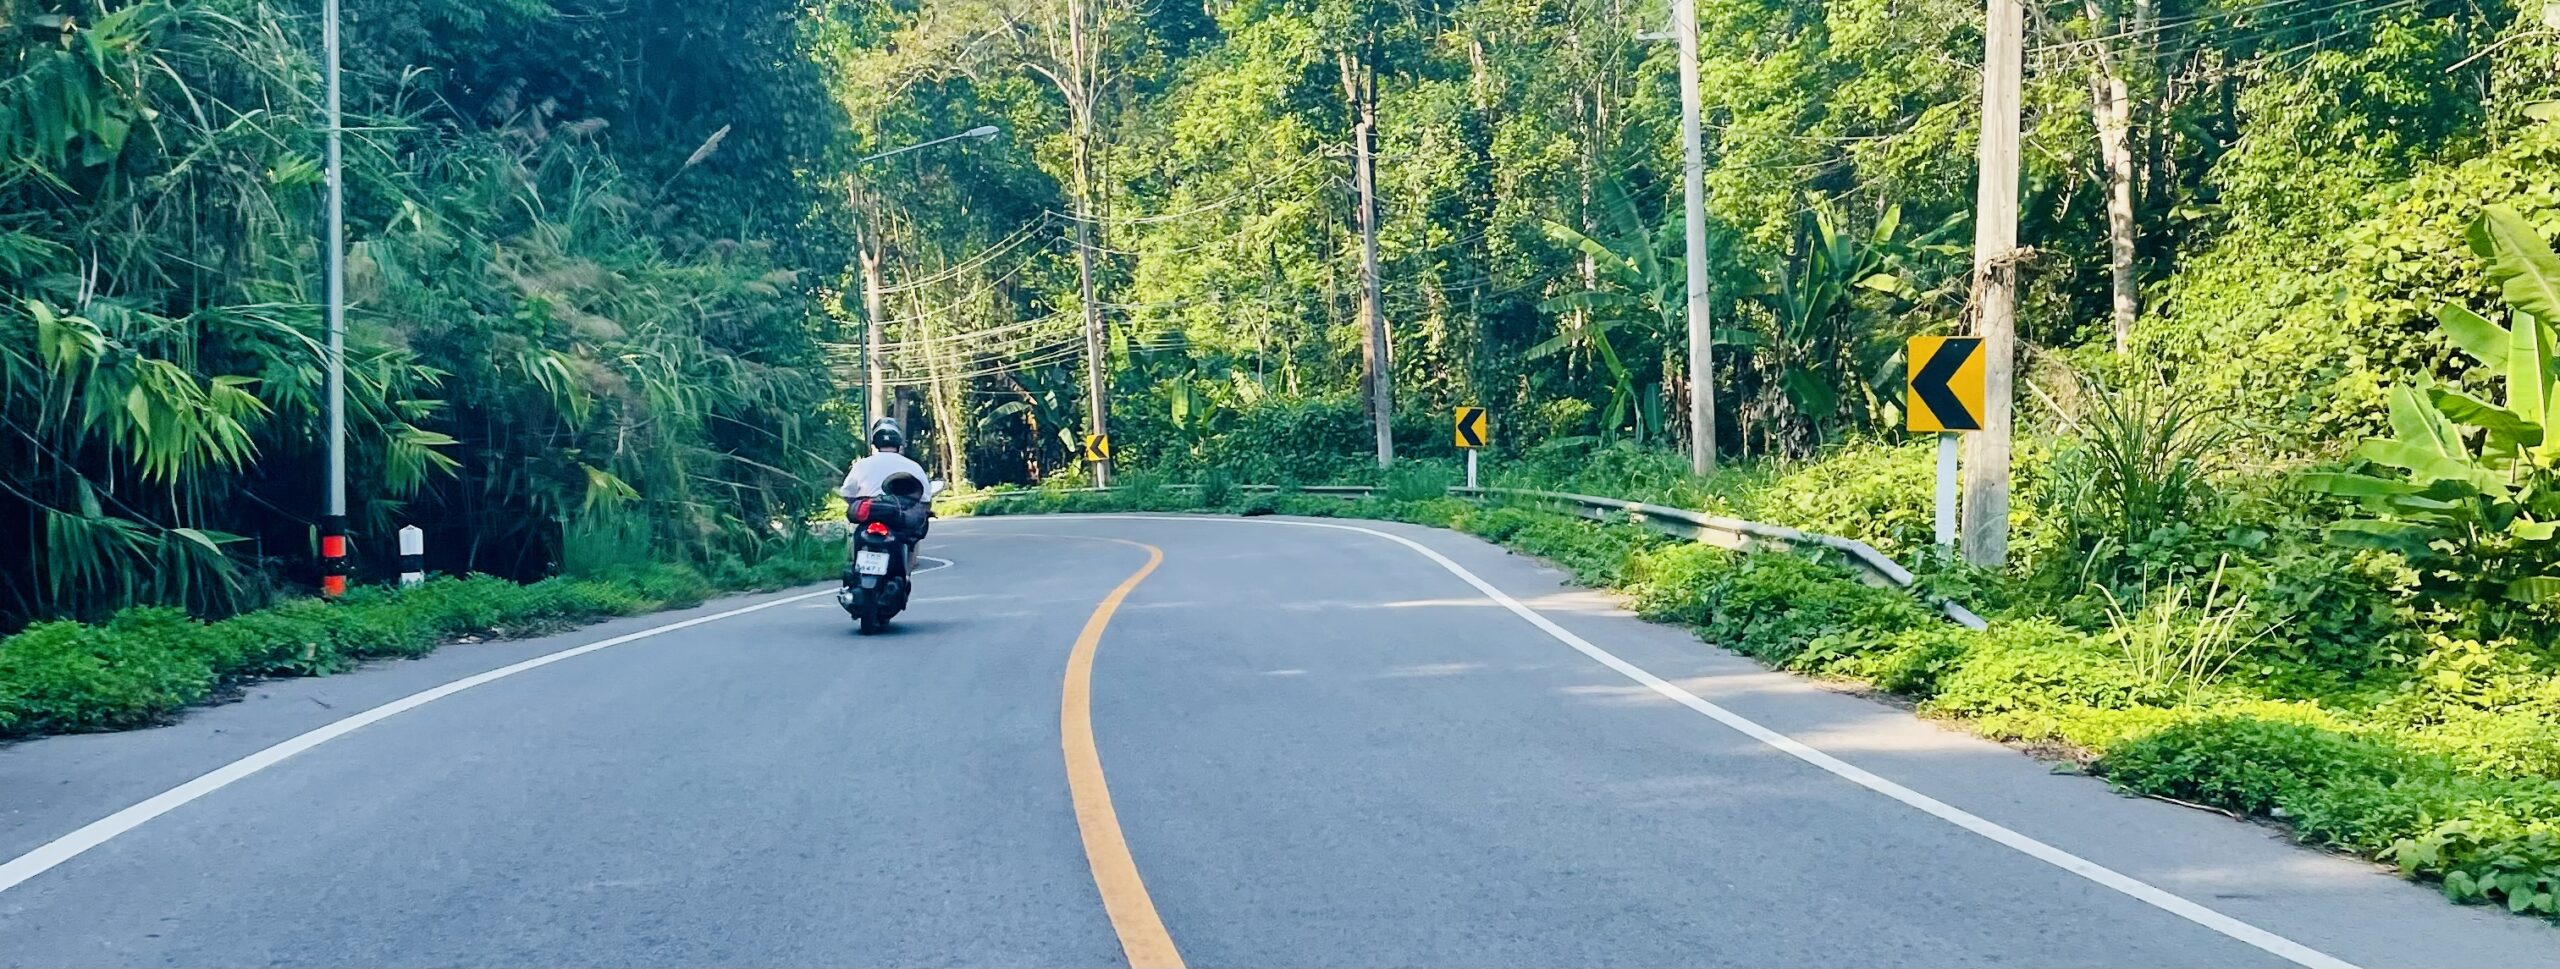 Vue en scooter sur la route 1096 reliant Chiang Mai à Pai en Thailande